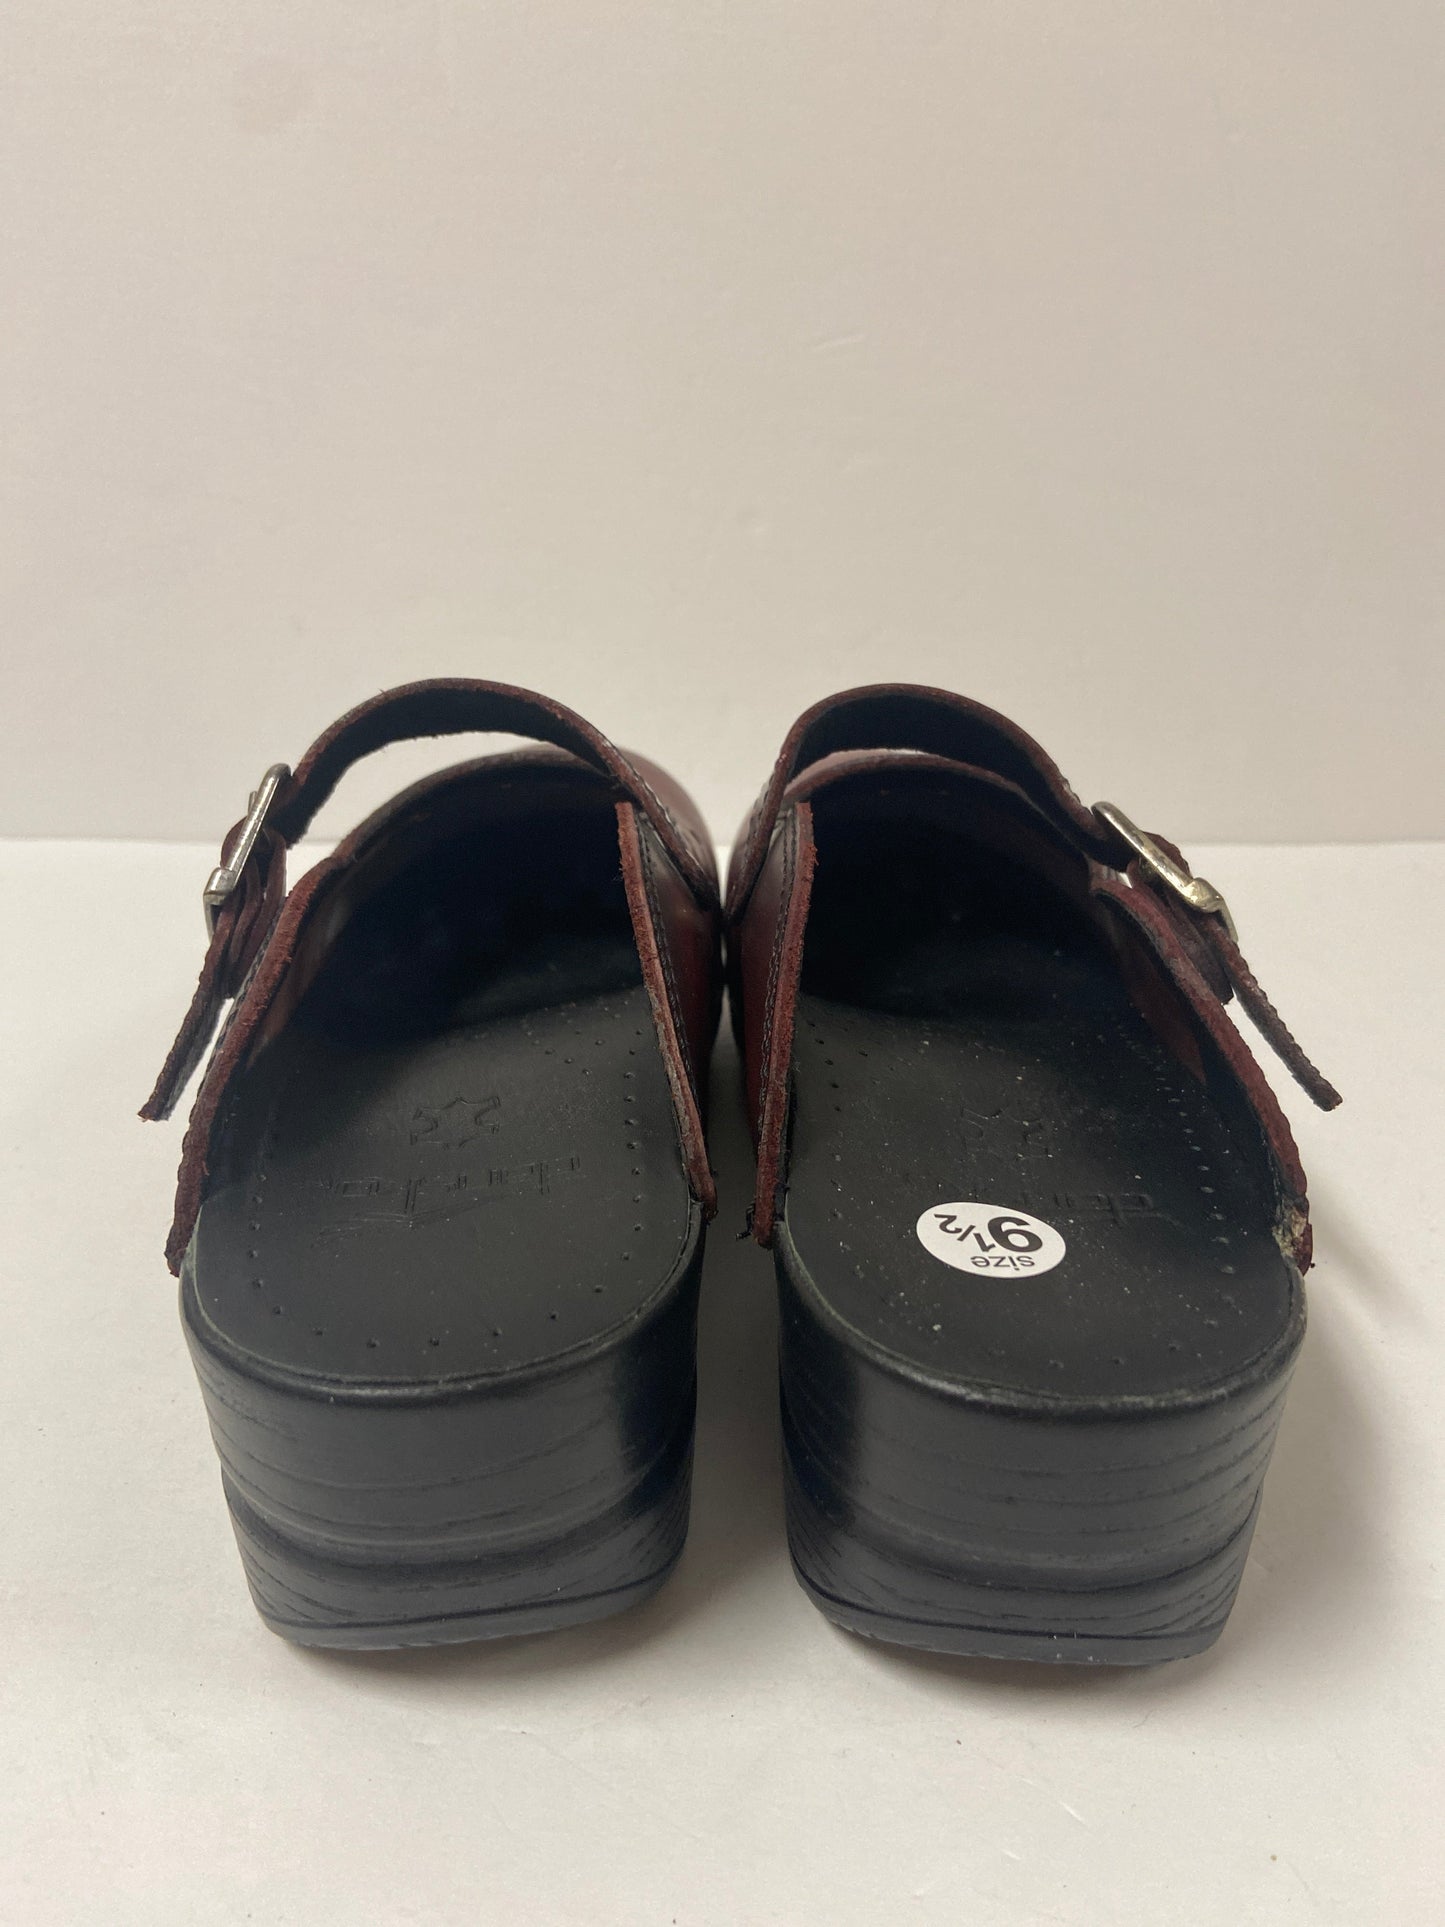 Shoes Flats Mule & Slide By Dansko  Size: 9.5